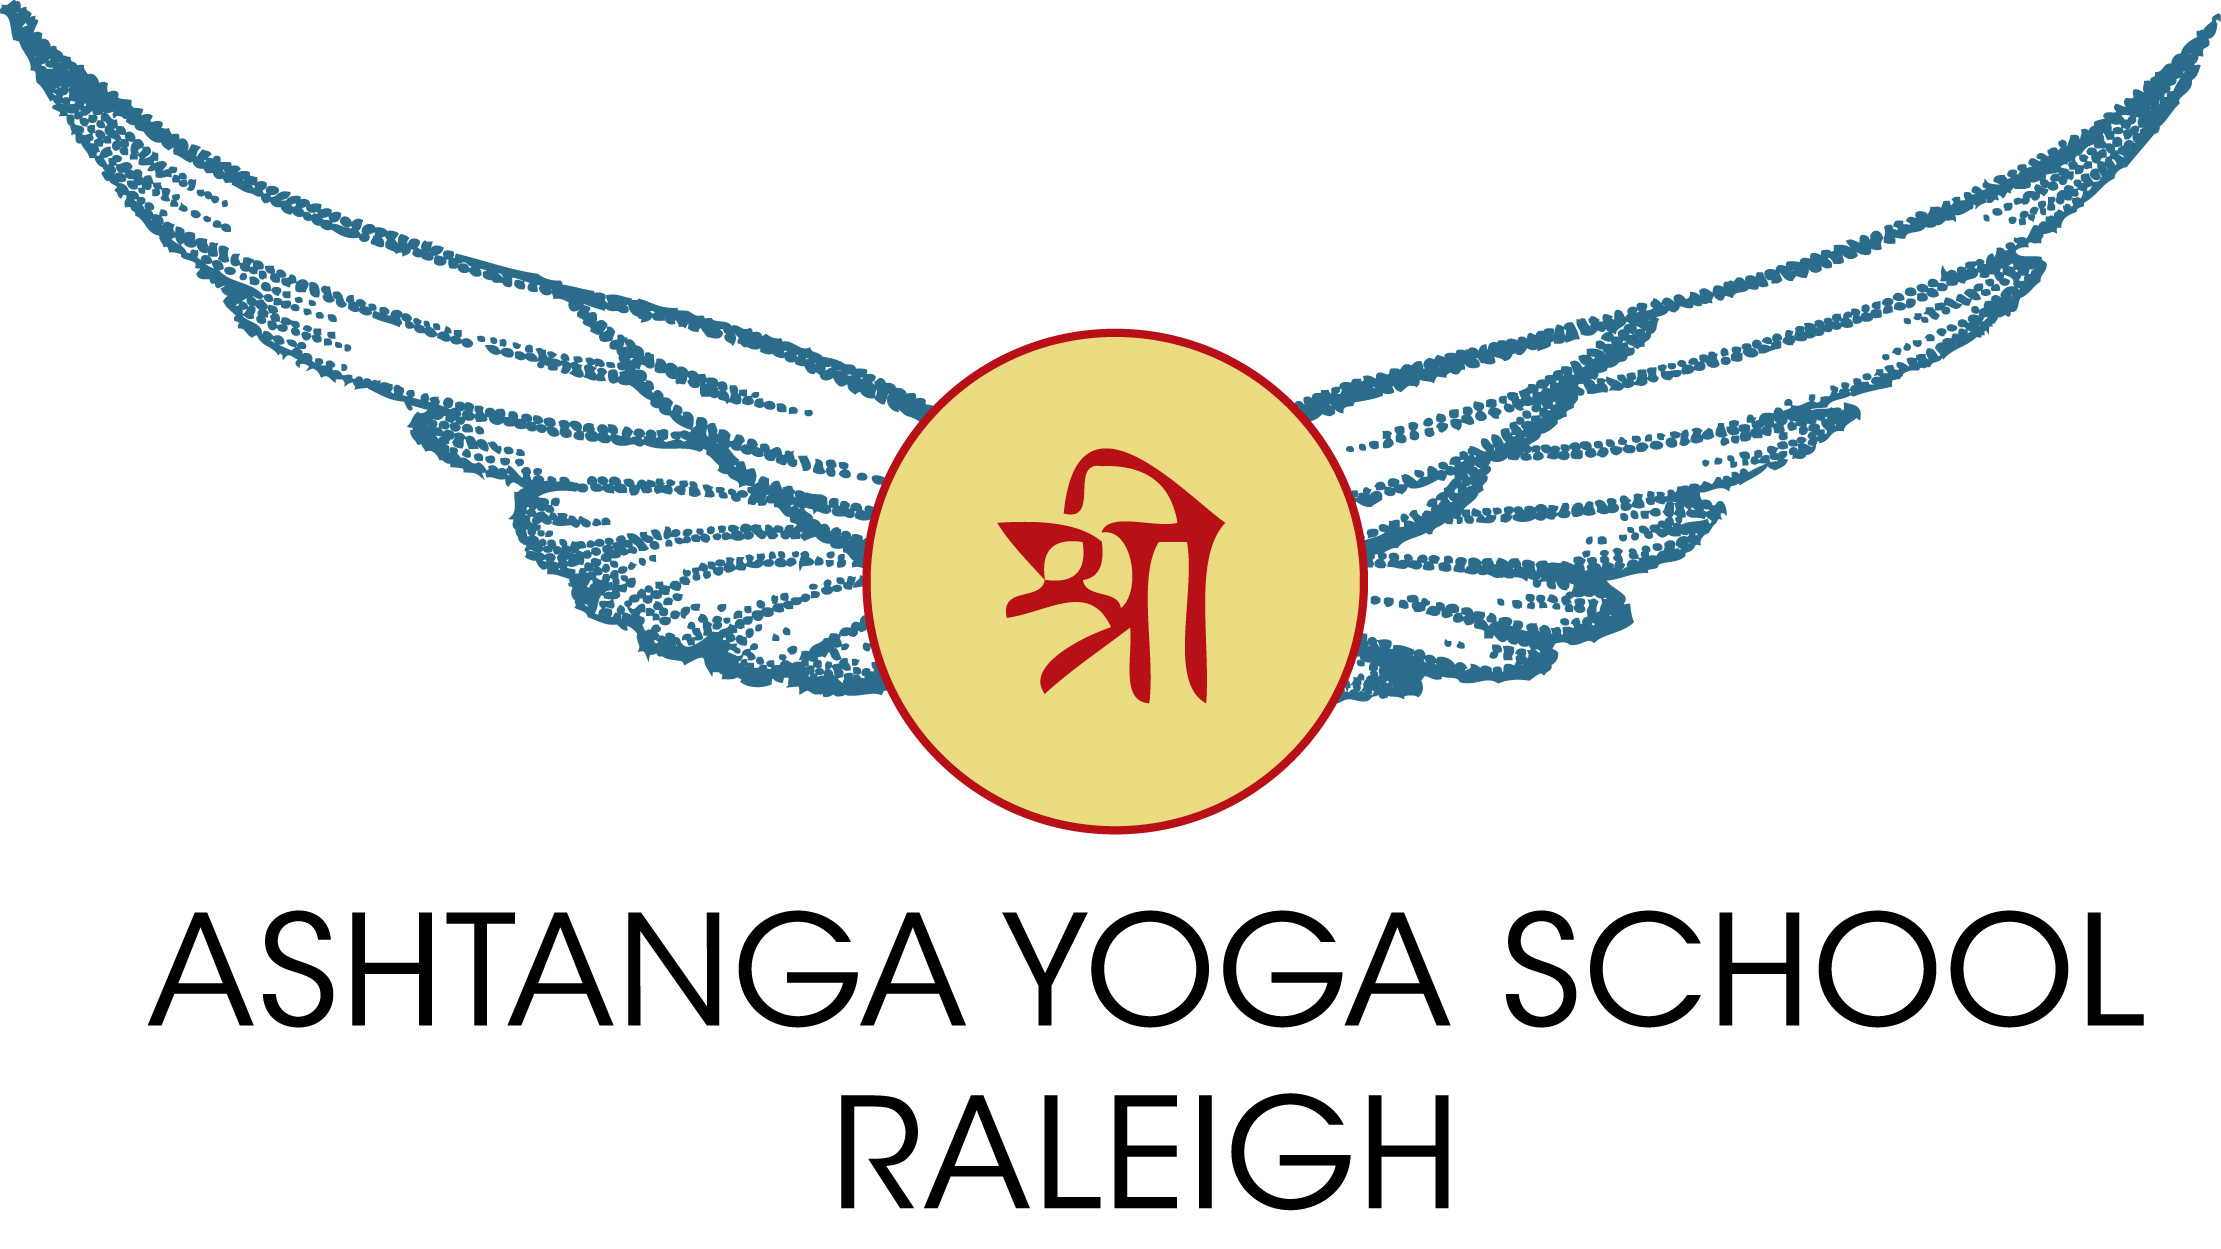 Ashtanga (eight limbs of yoga) - Wikipedia